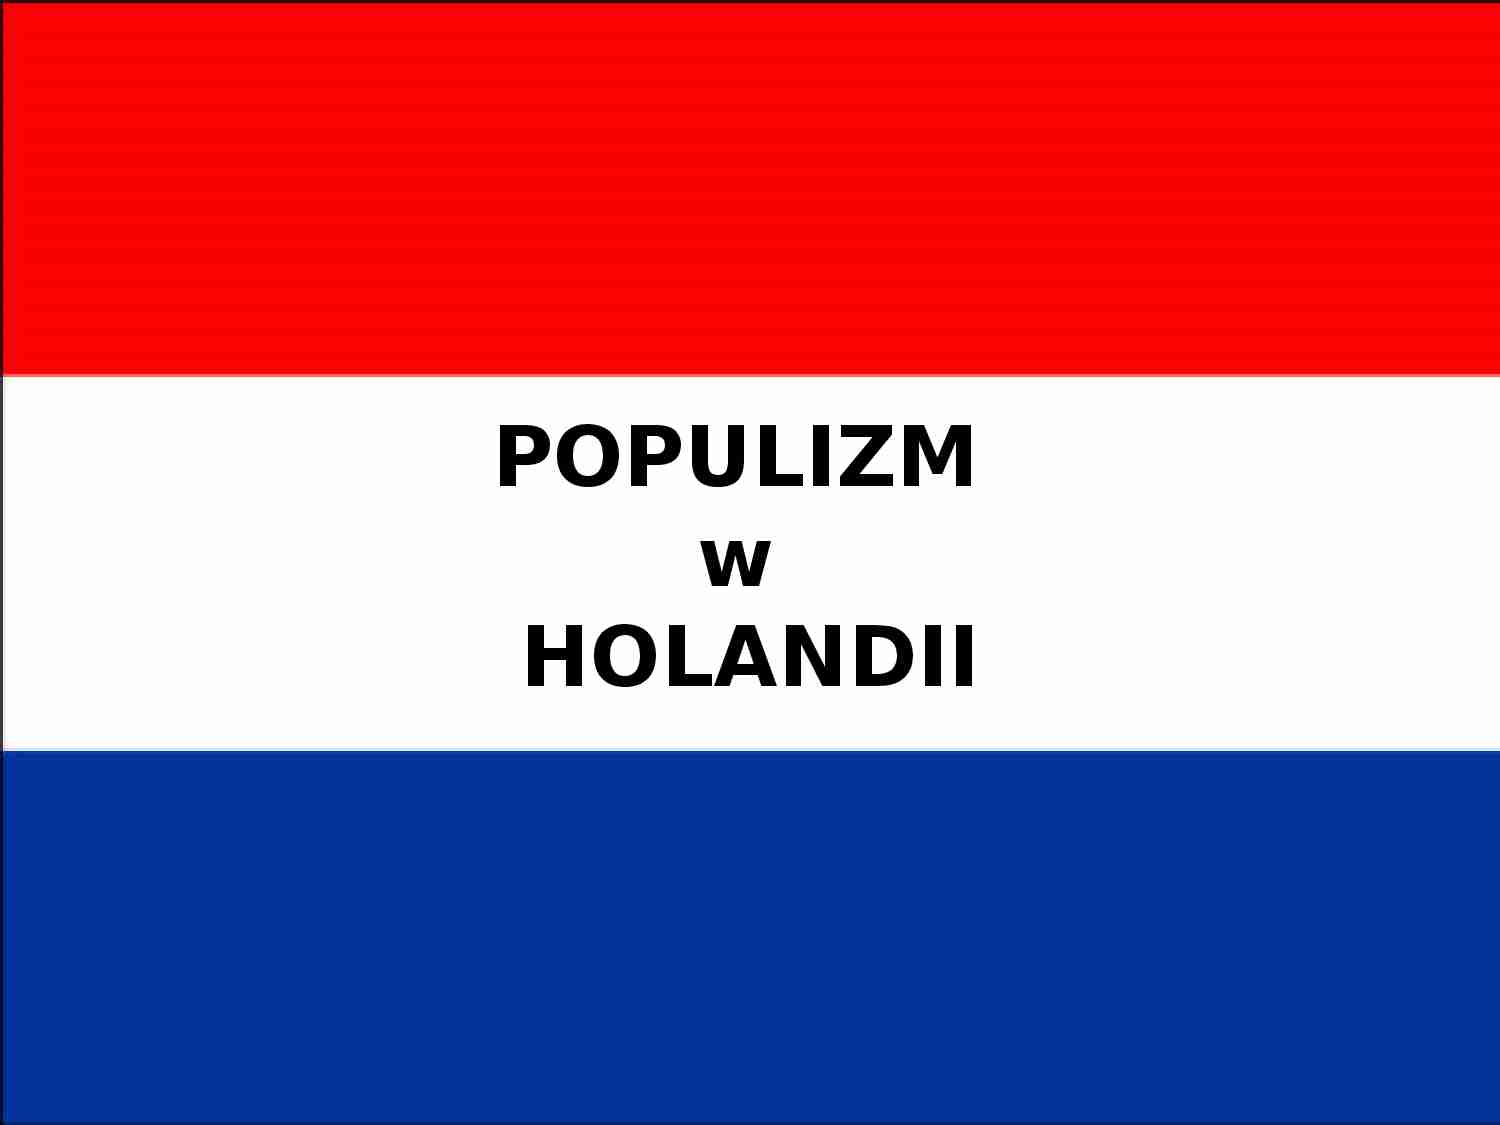  Populizm w Holandii - prezentacja - strona 1